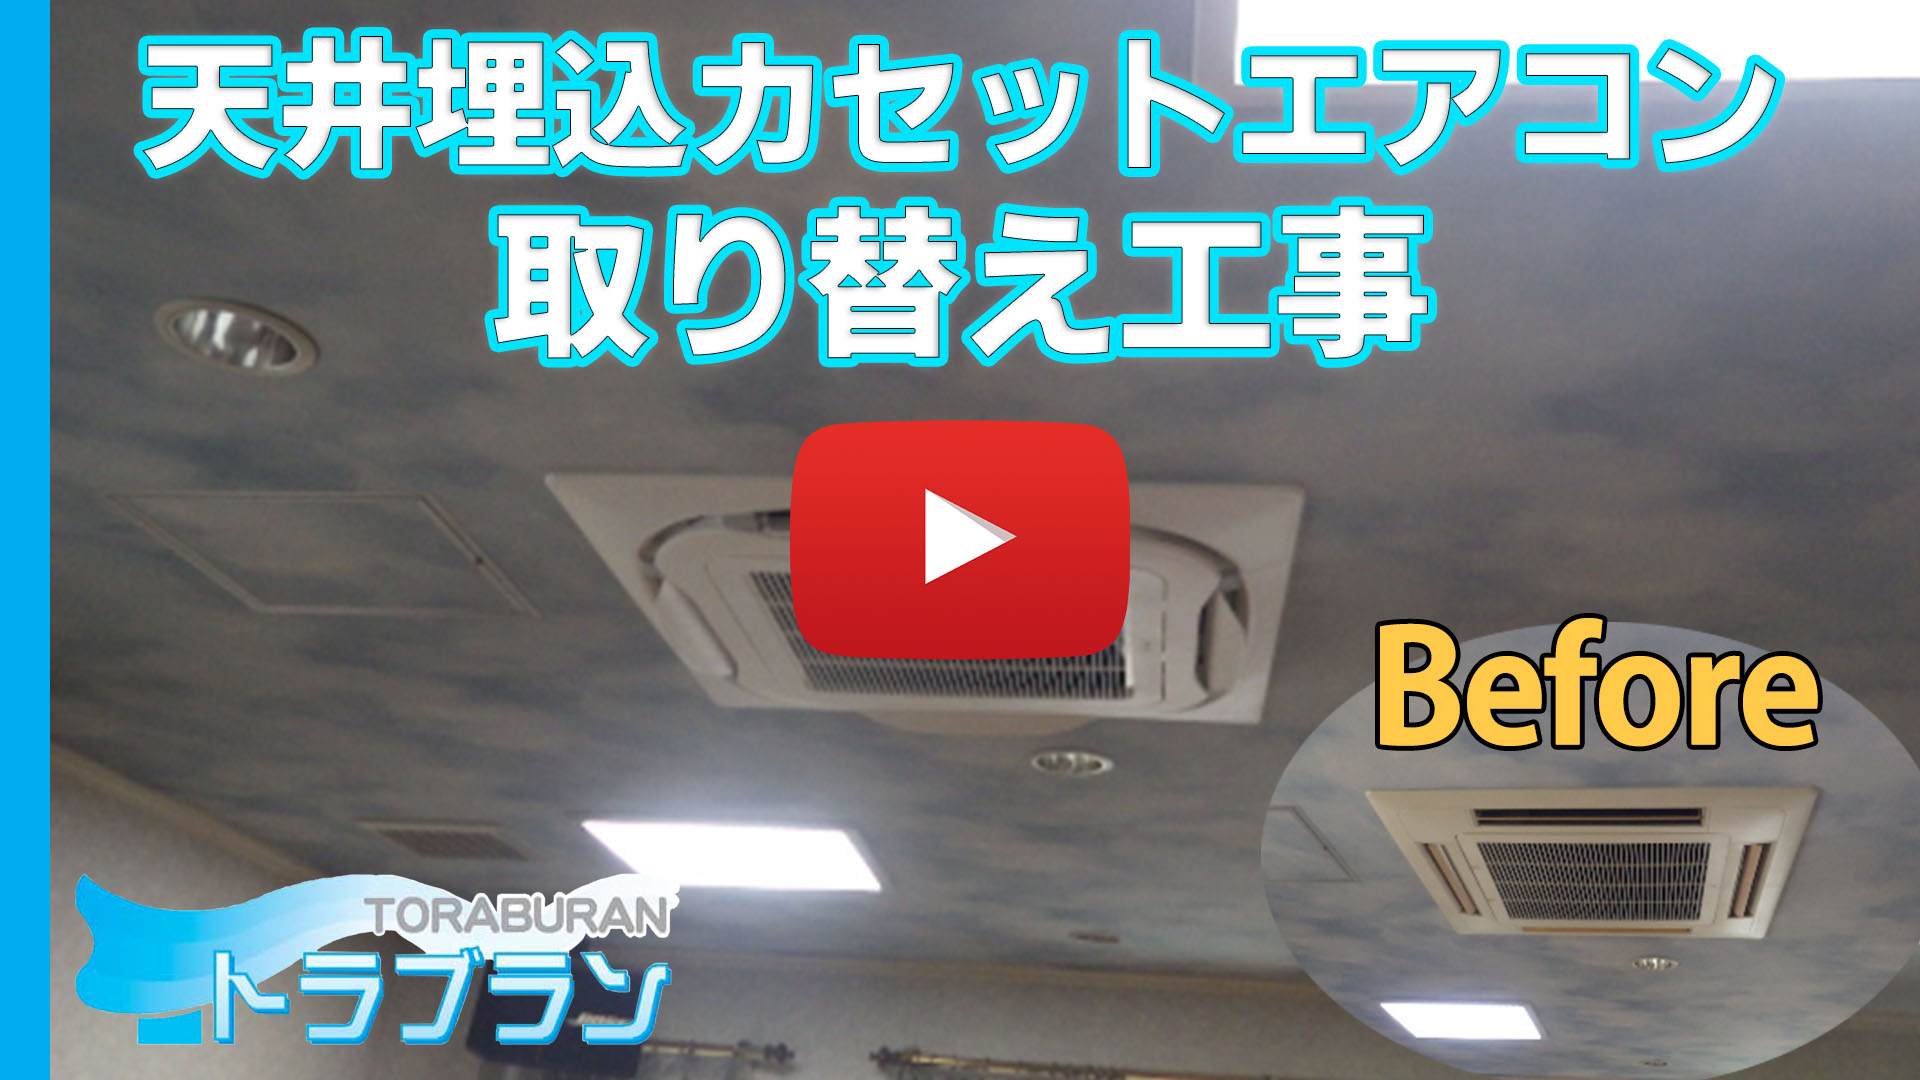 天井埋込 カセットエアコン 取り替え工事のサムネイルb